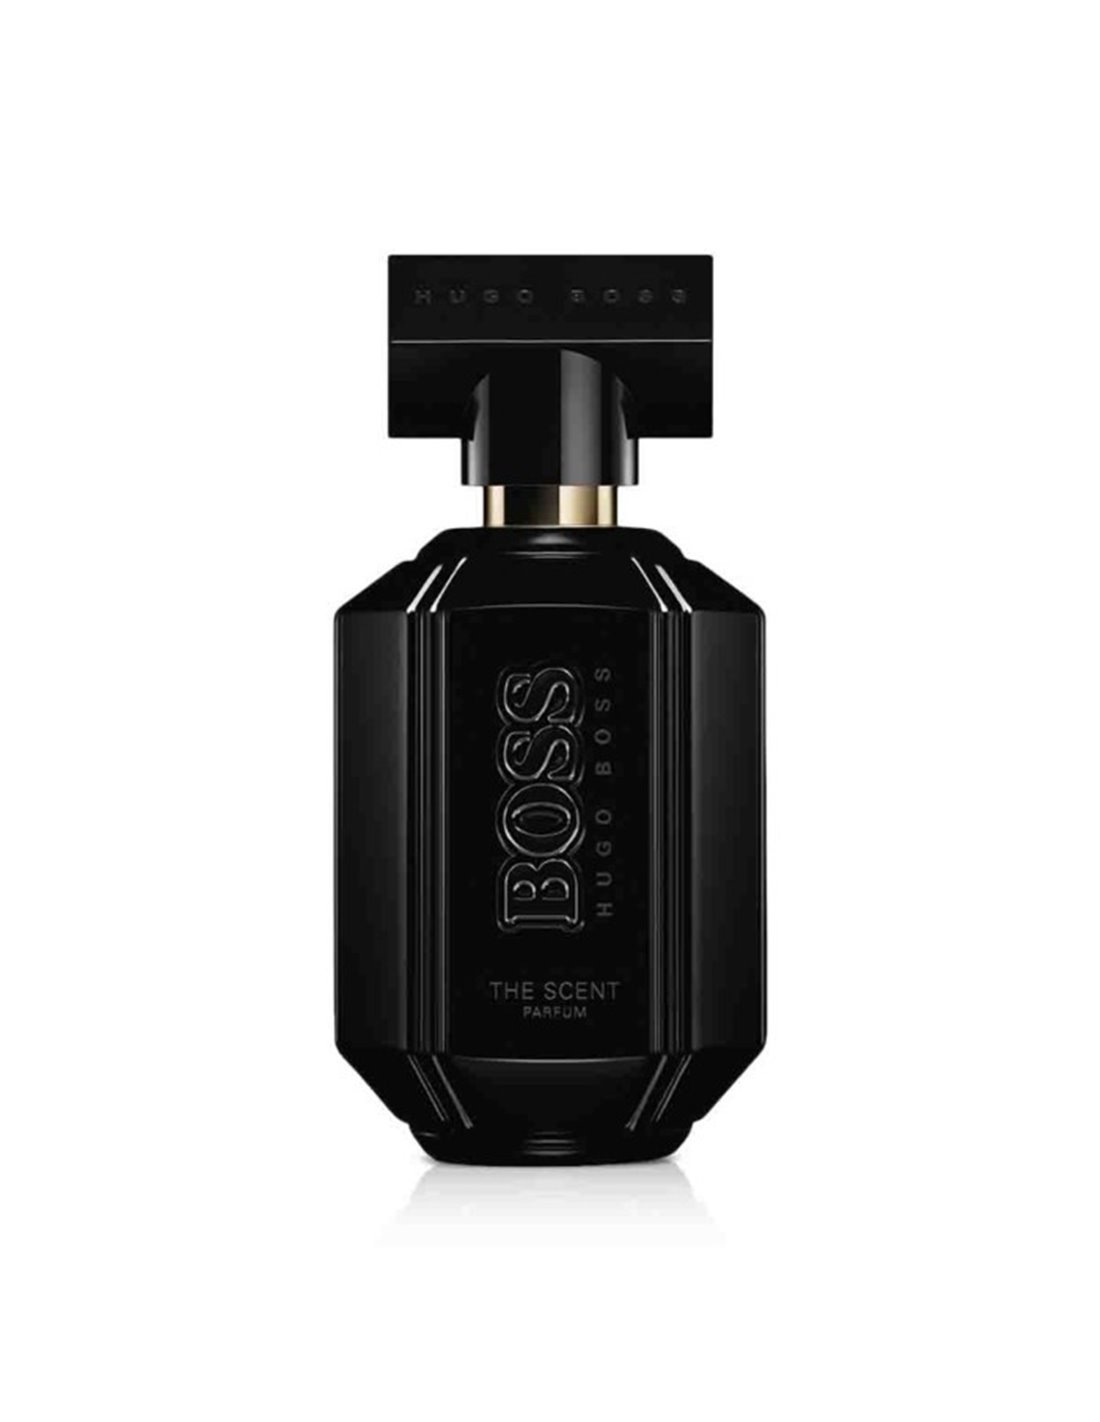 Gracias vamos a hacerlo Para un día de viaje The Scent for Her Parfum Edition, Hugo Boss - Perfumerías Allkauf